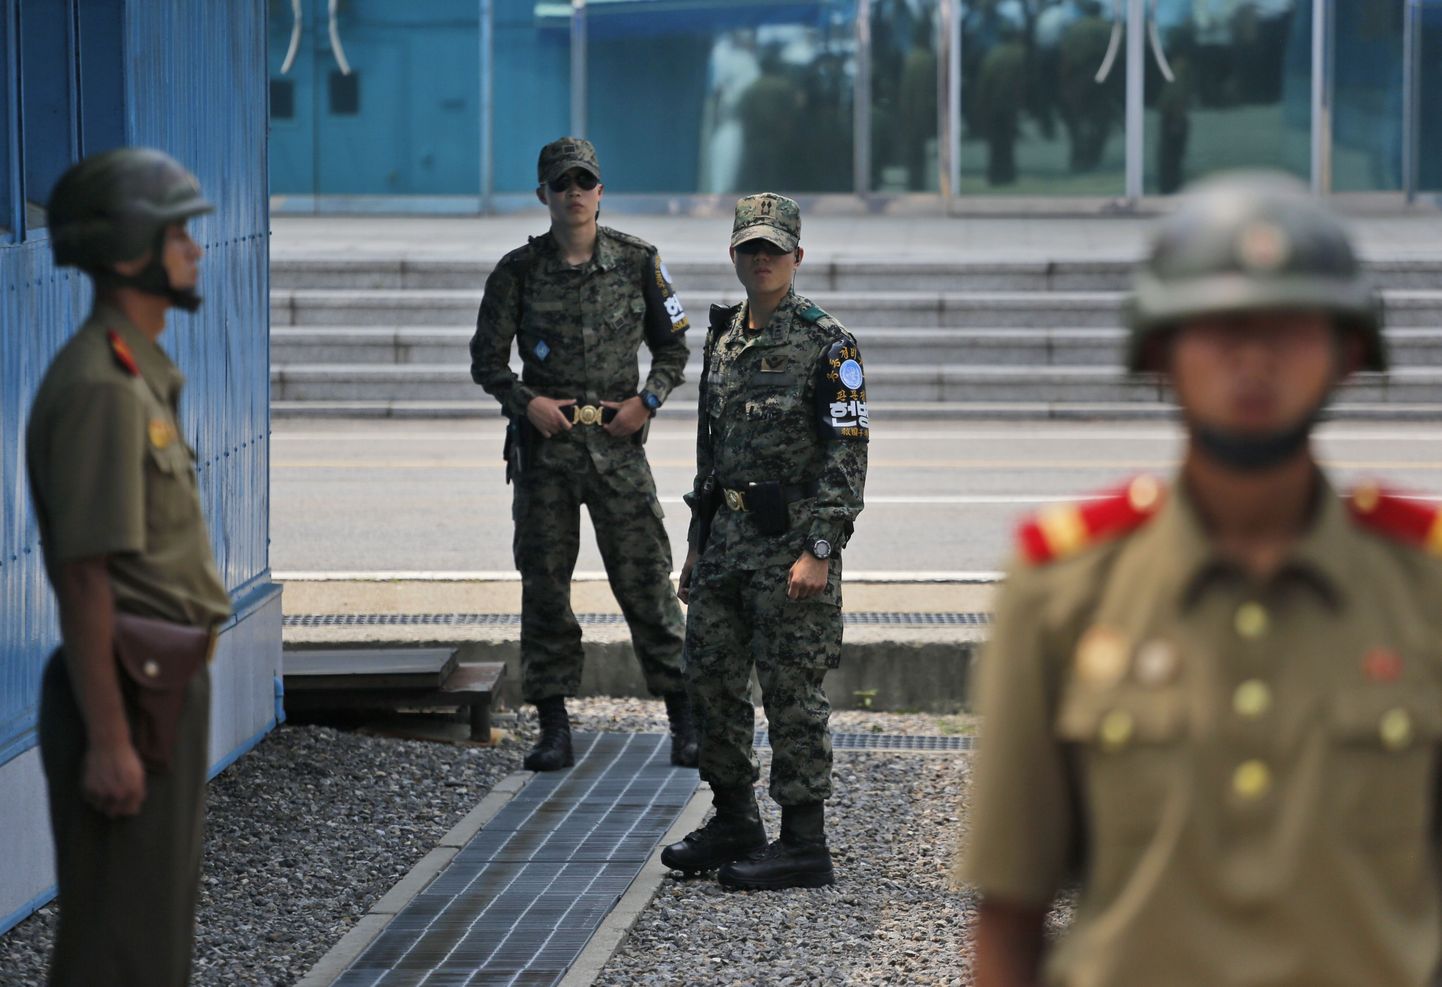 Lõuna-Korea sõdurid inspekteerimas oma vahti pidavaid Põhja-Korea kolleege kaht riiki lahutavas demilitariseeritud tsoonis.